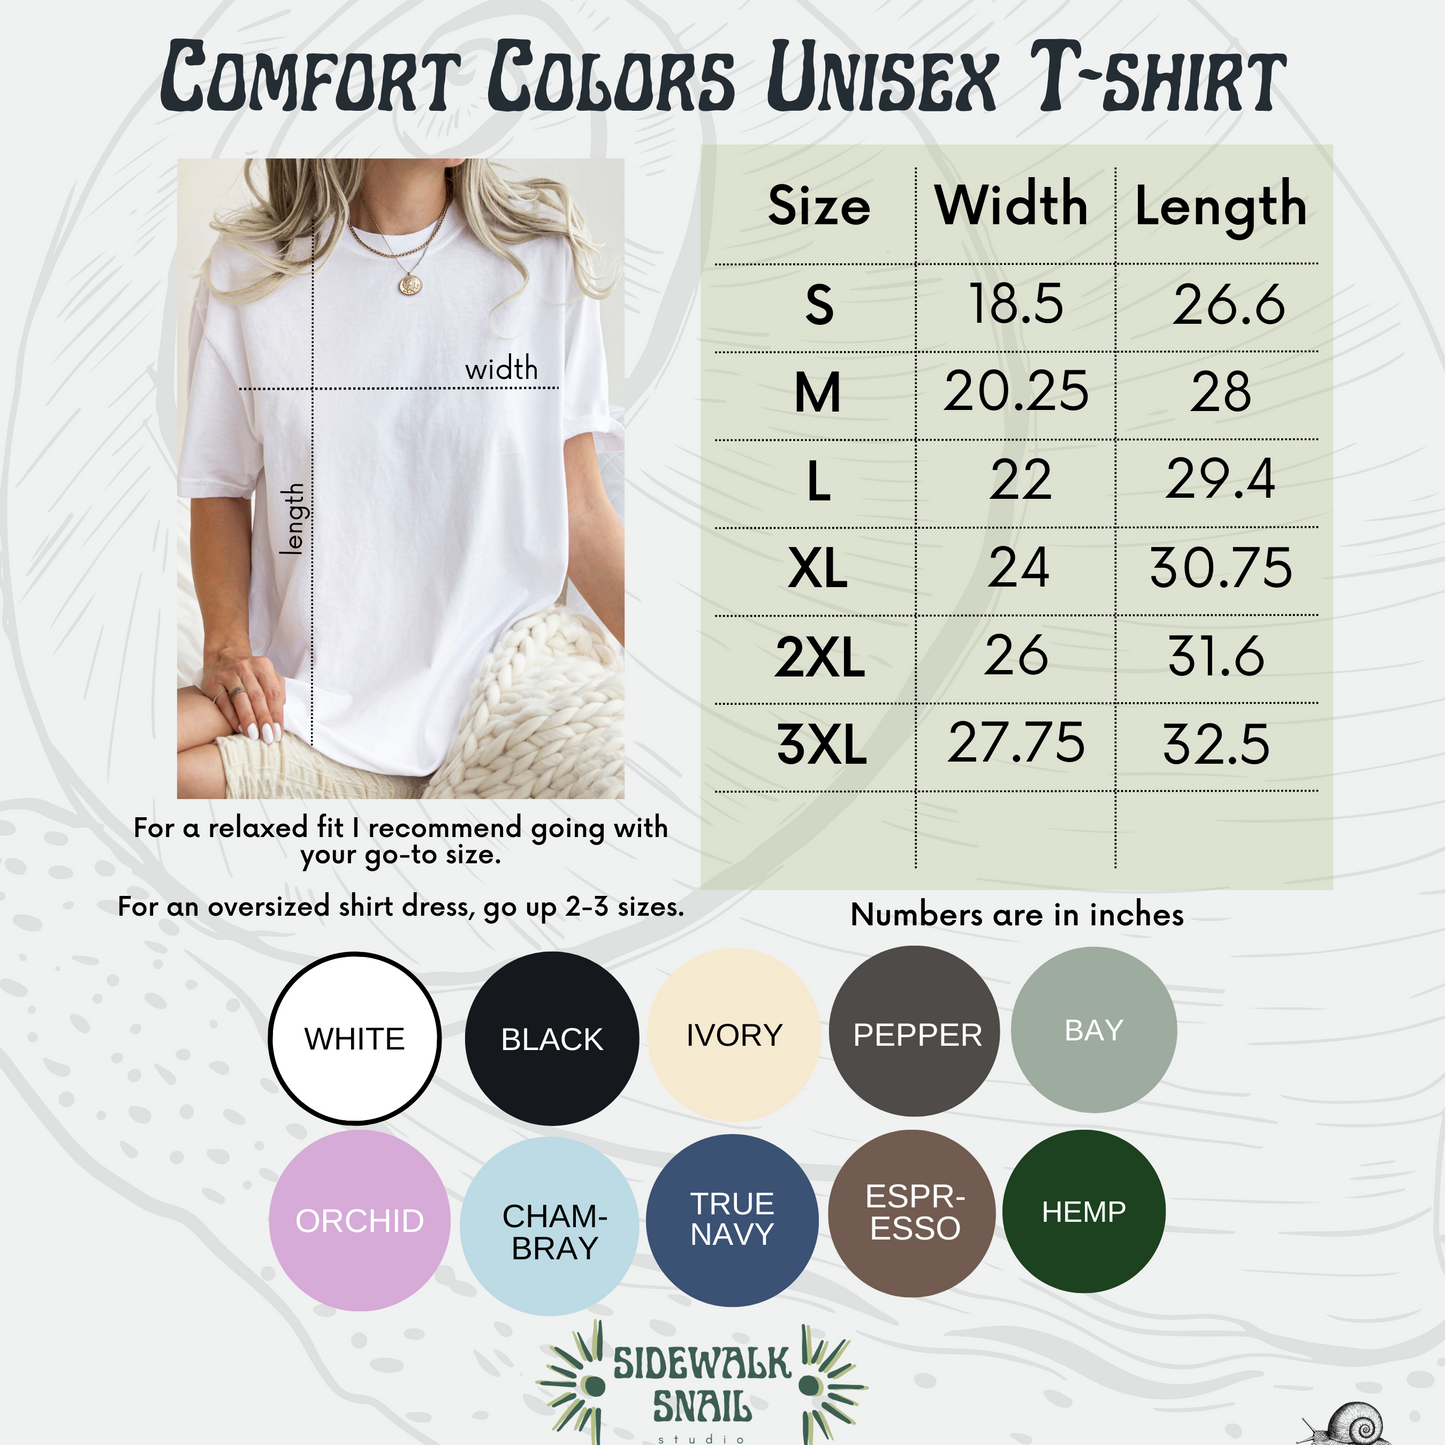 Hurkle Durkle Club Comfort Colors Shirt, Scottish Slang